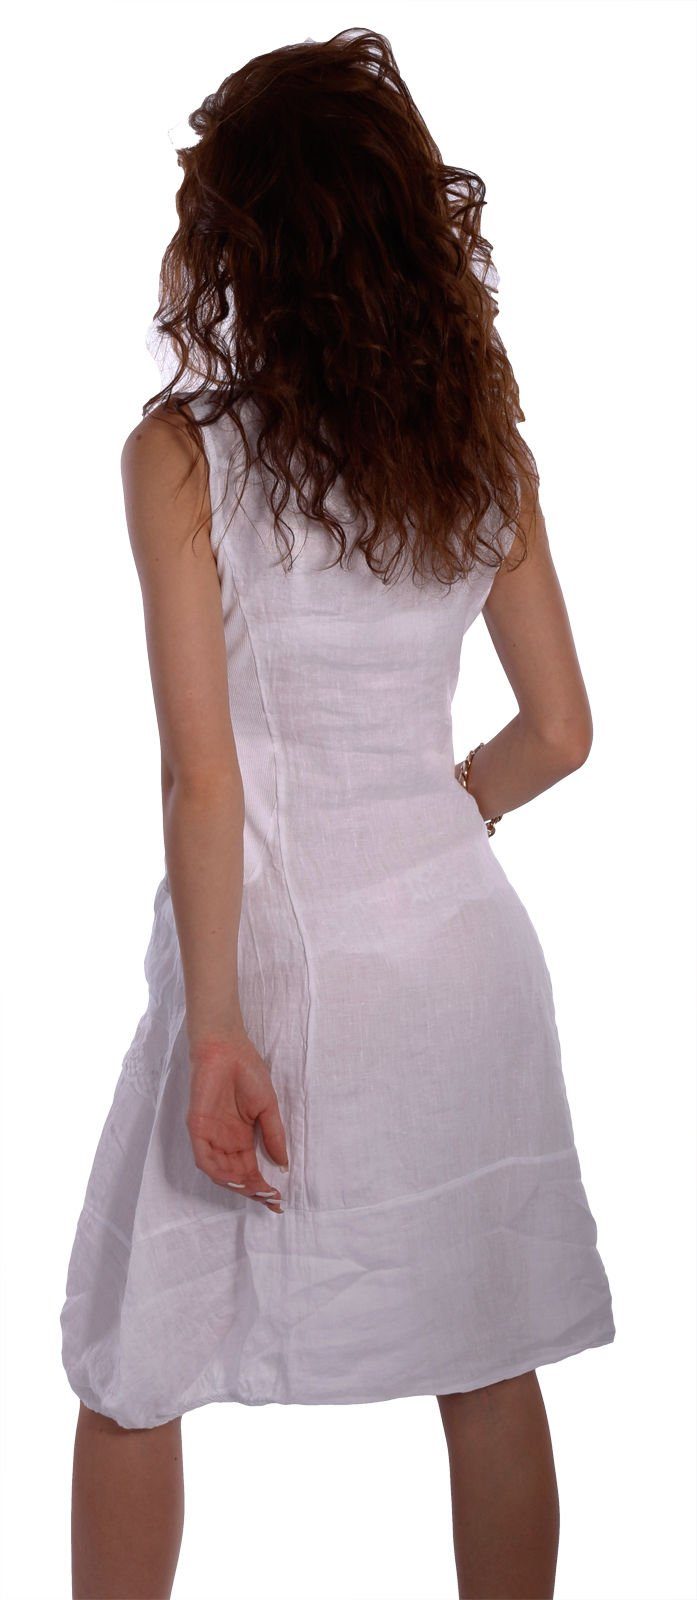 Charis Moda Kleid Leinen Details mit Sommerkleid Weiß ärmellos schönen